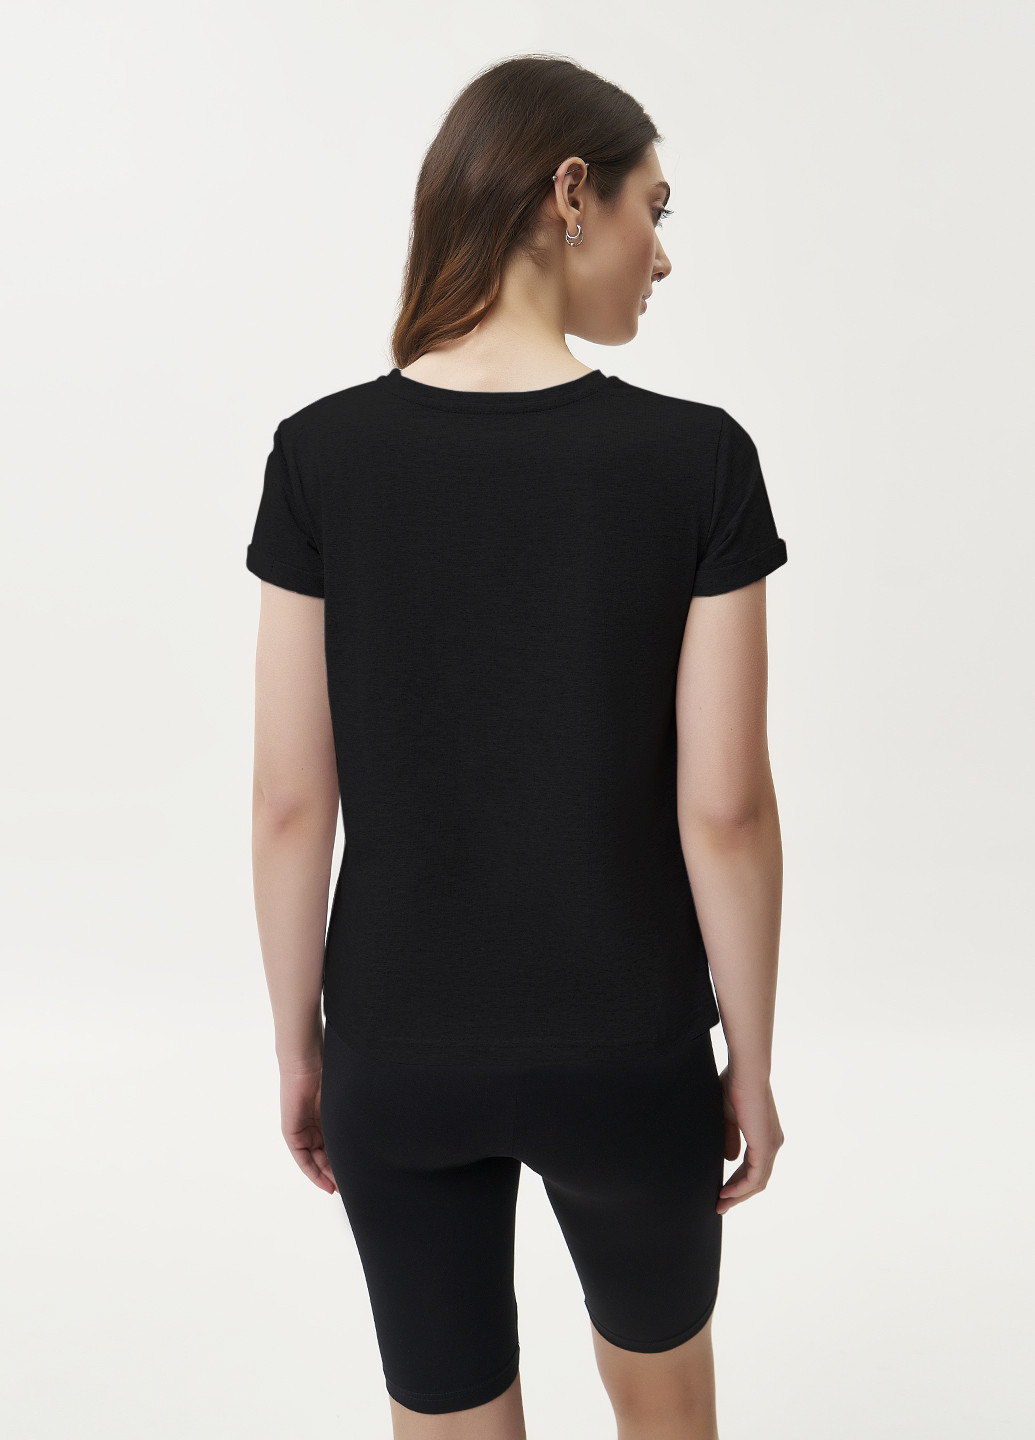 Чорна літня футболка жіноча базова, рукав з підворотом KASTA design